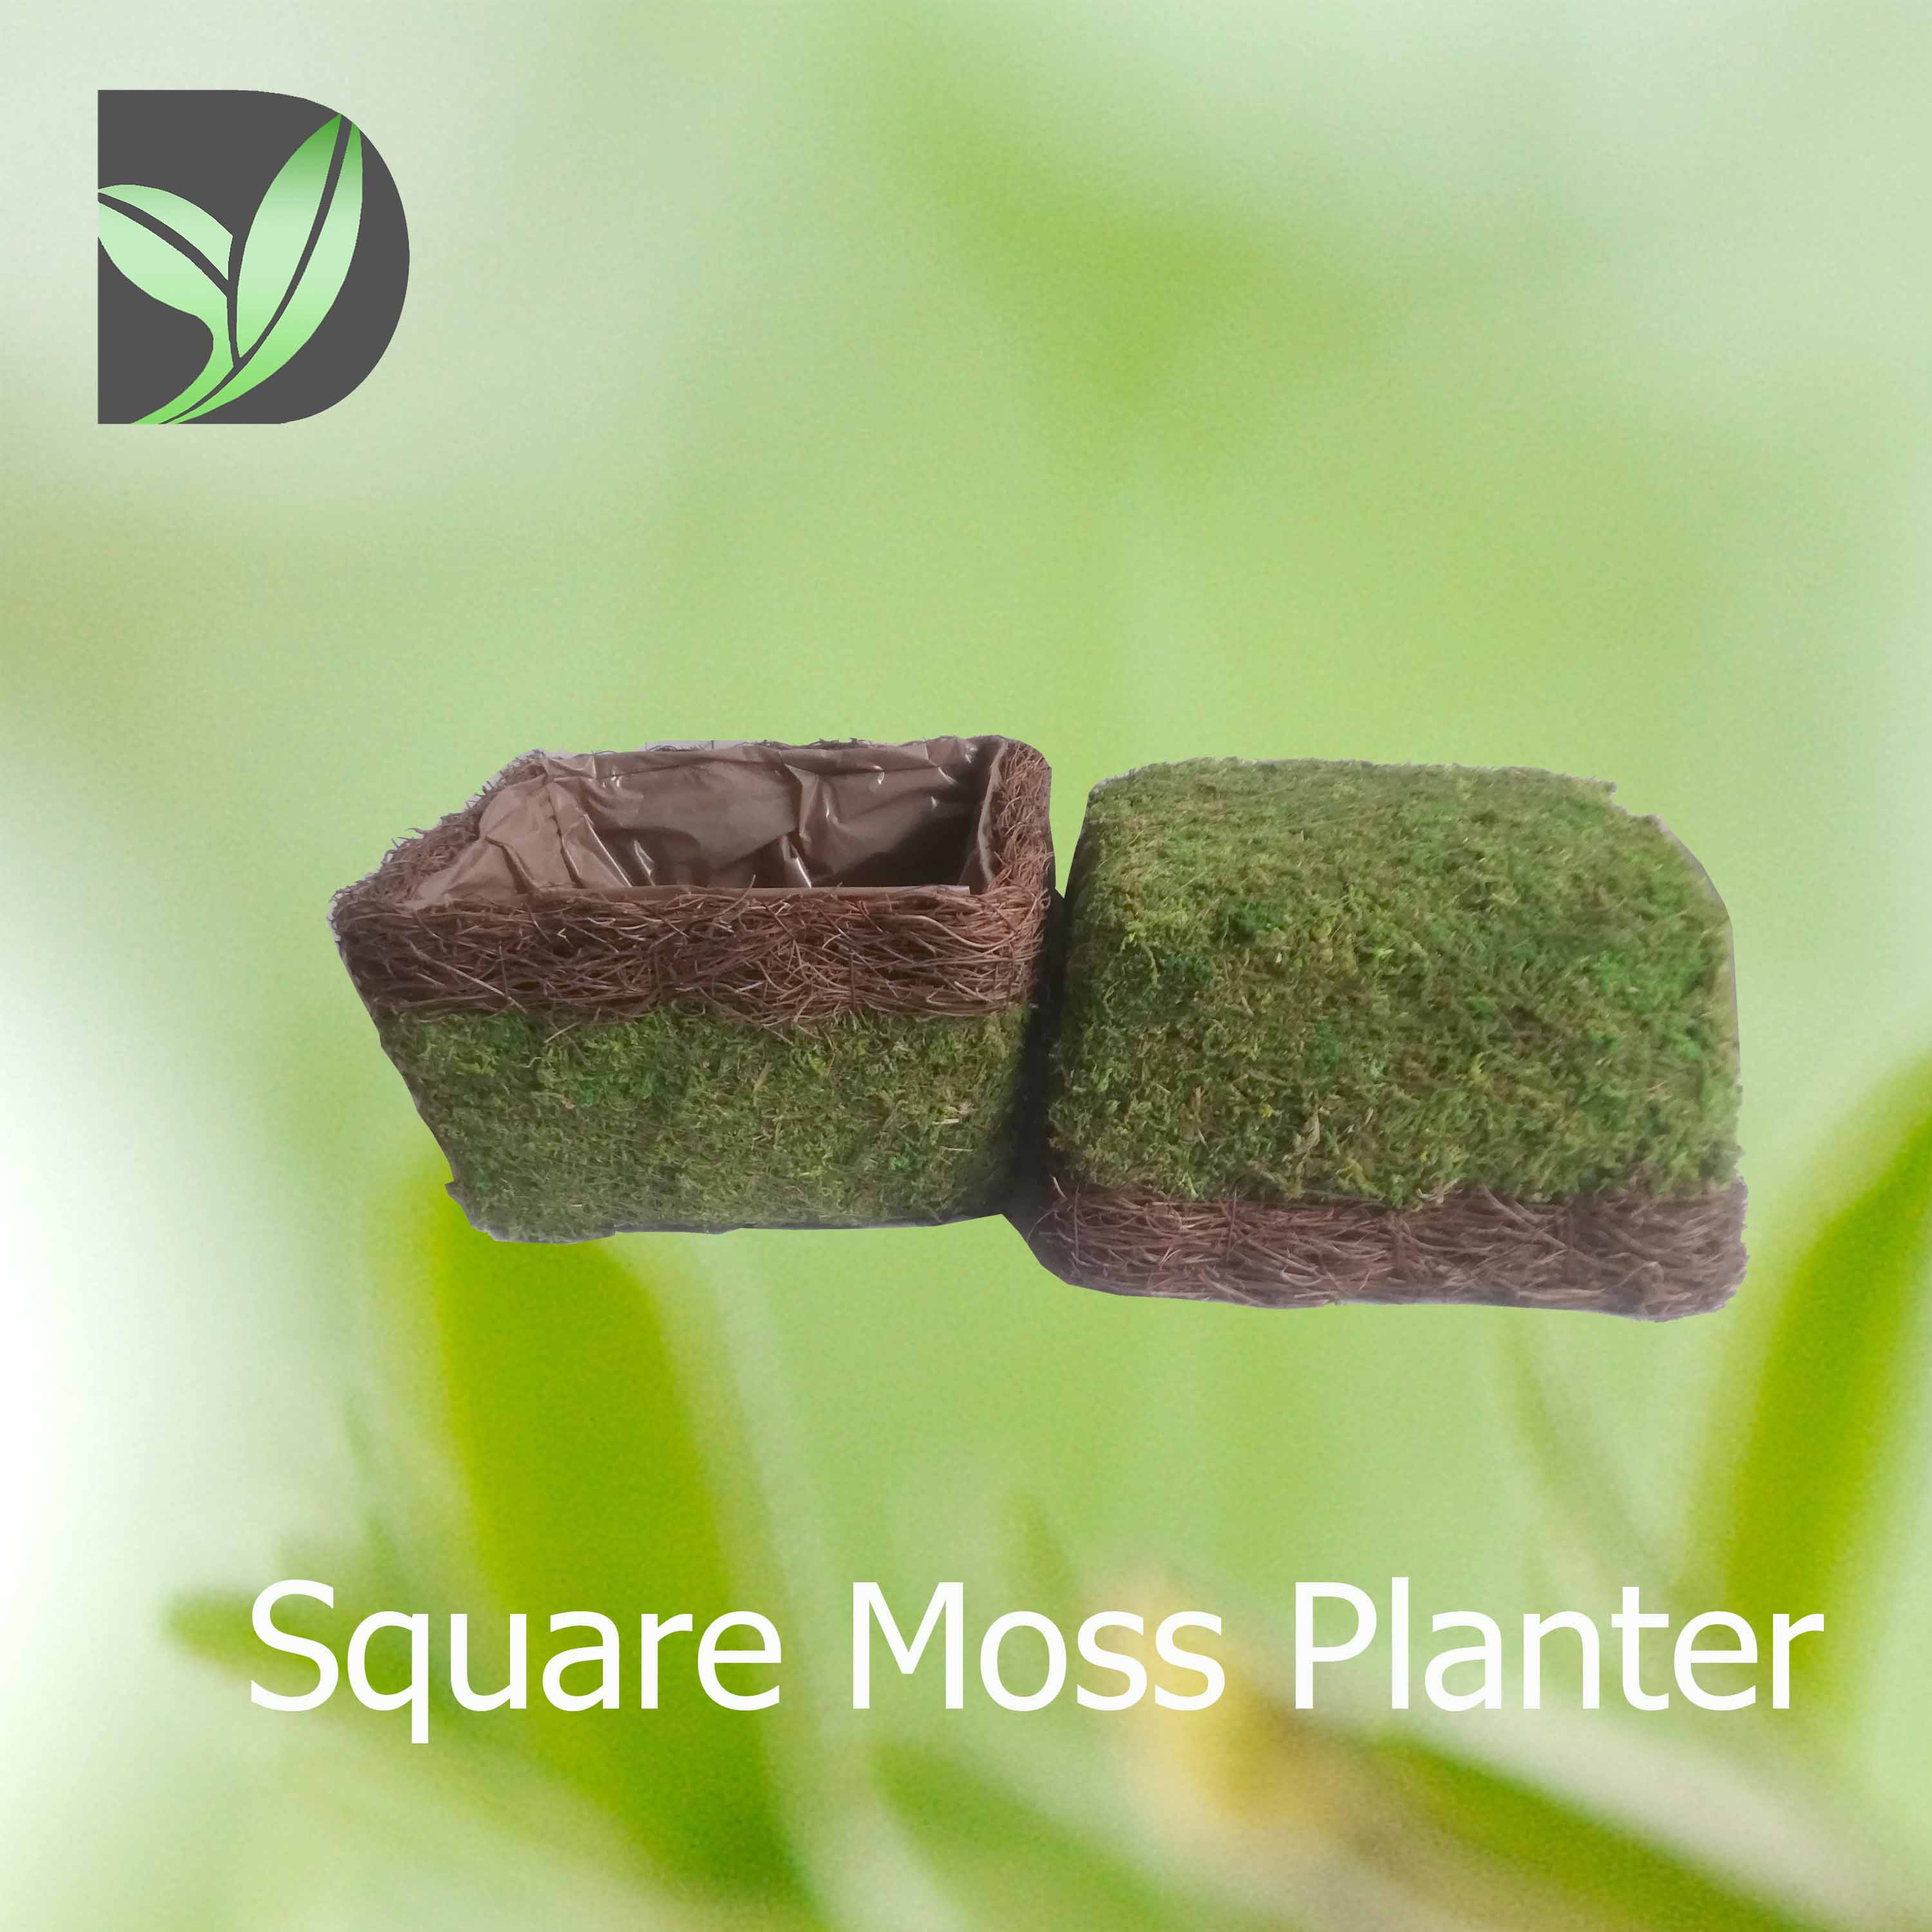 Square Moss Planter